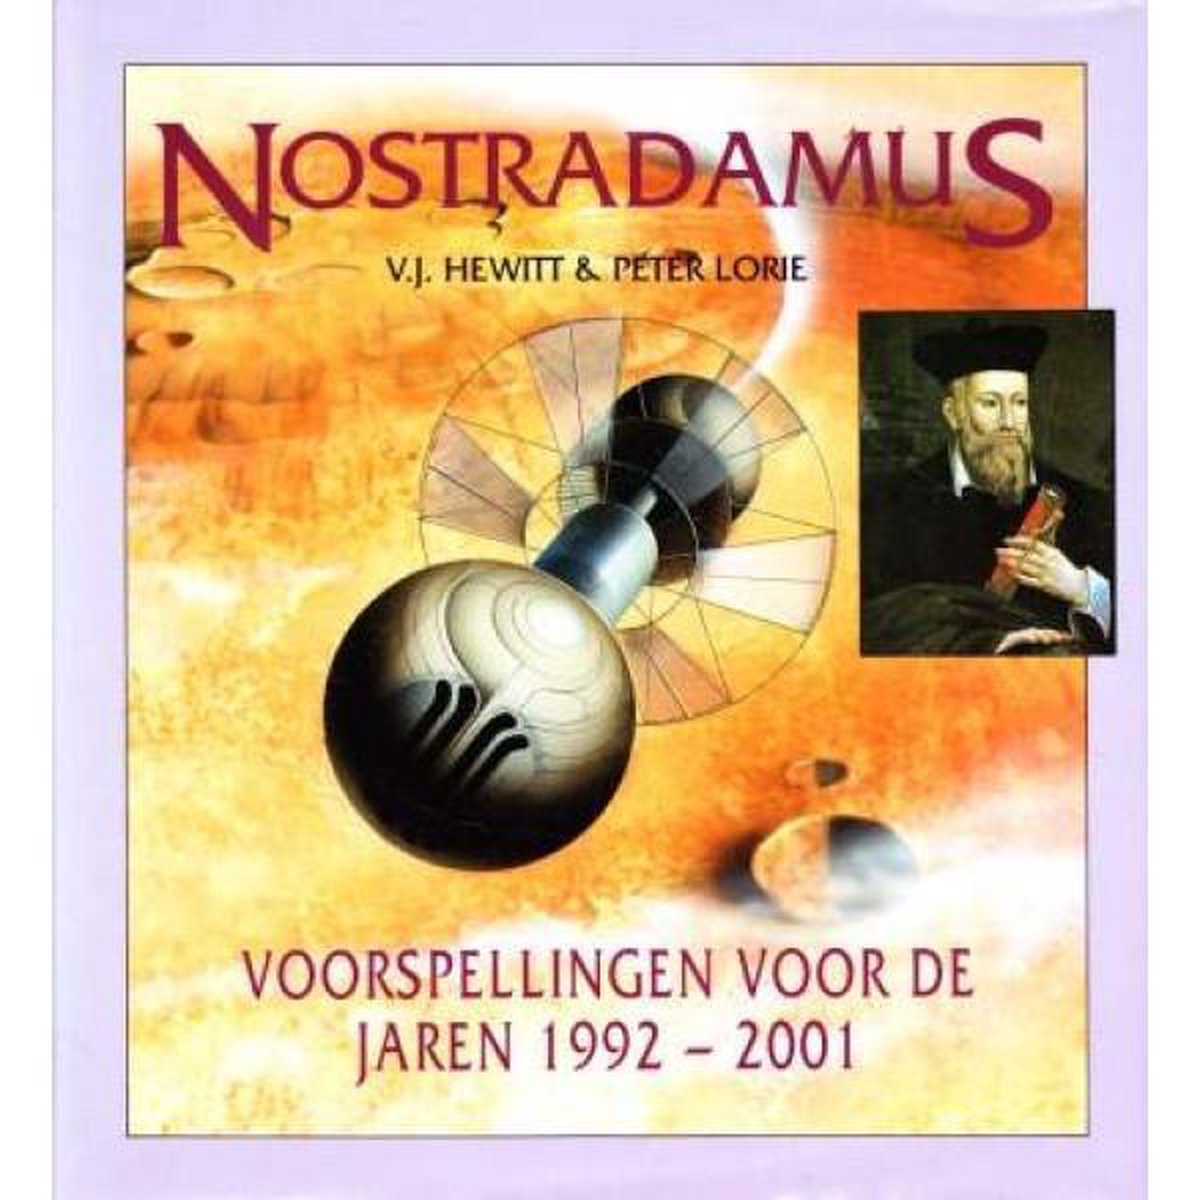 Nostradamus voorspellingen voor de jaren 1992-2001